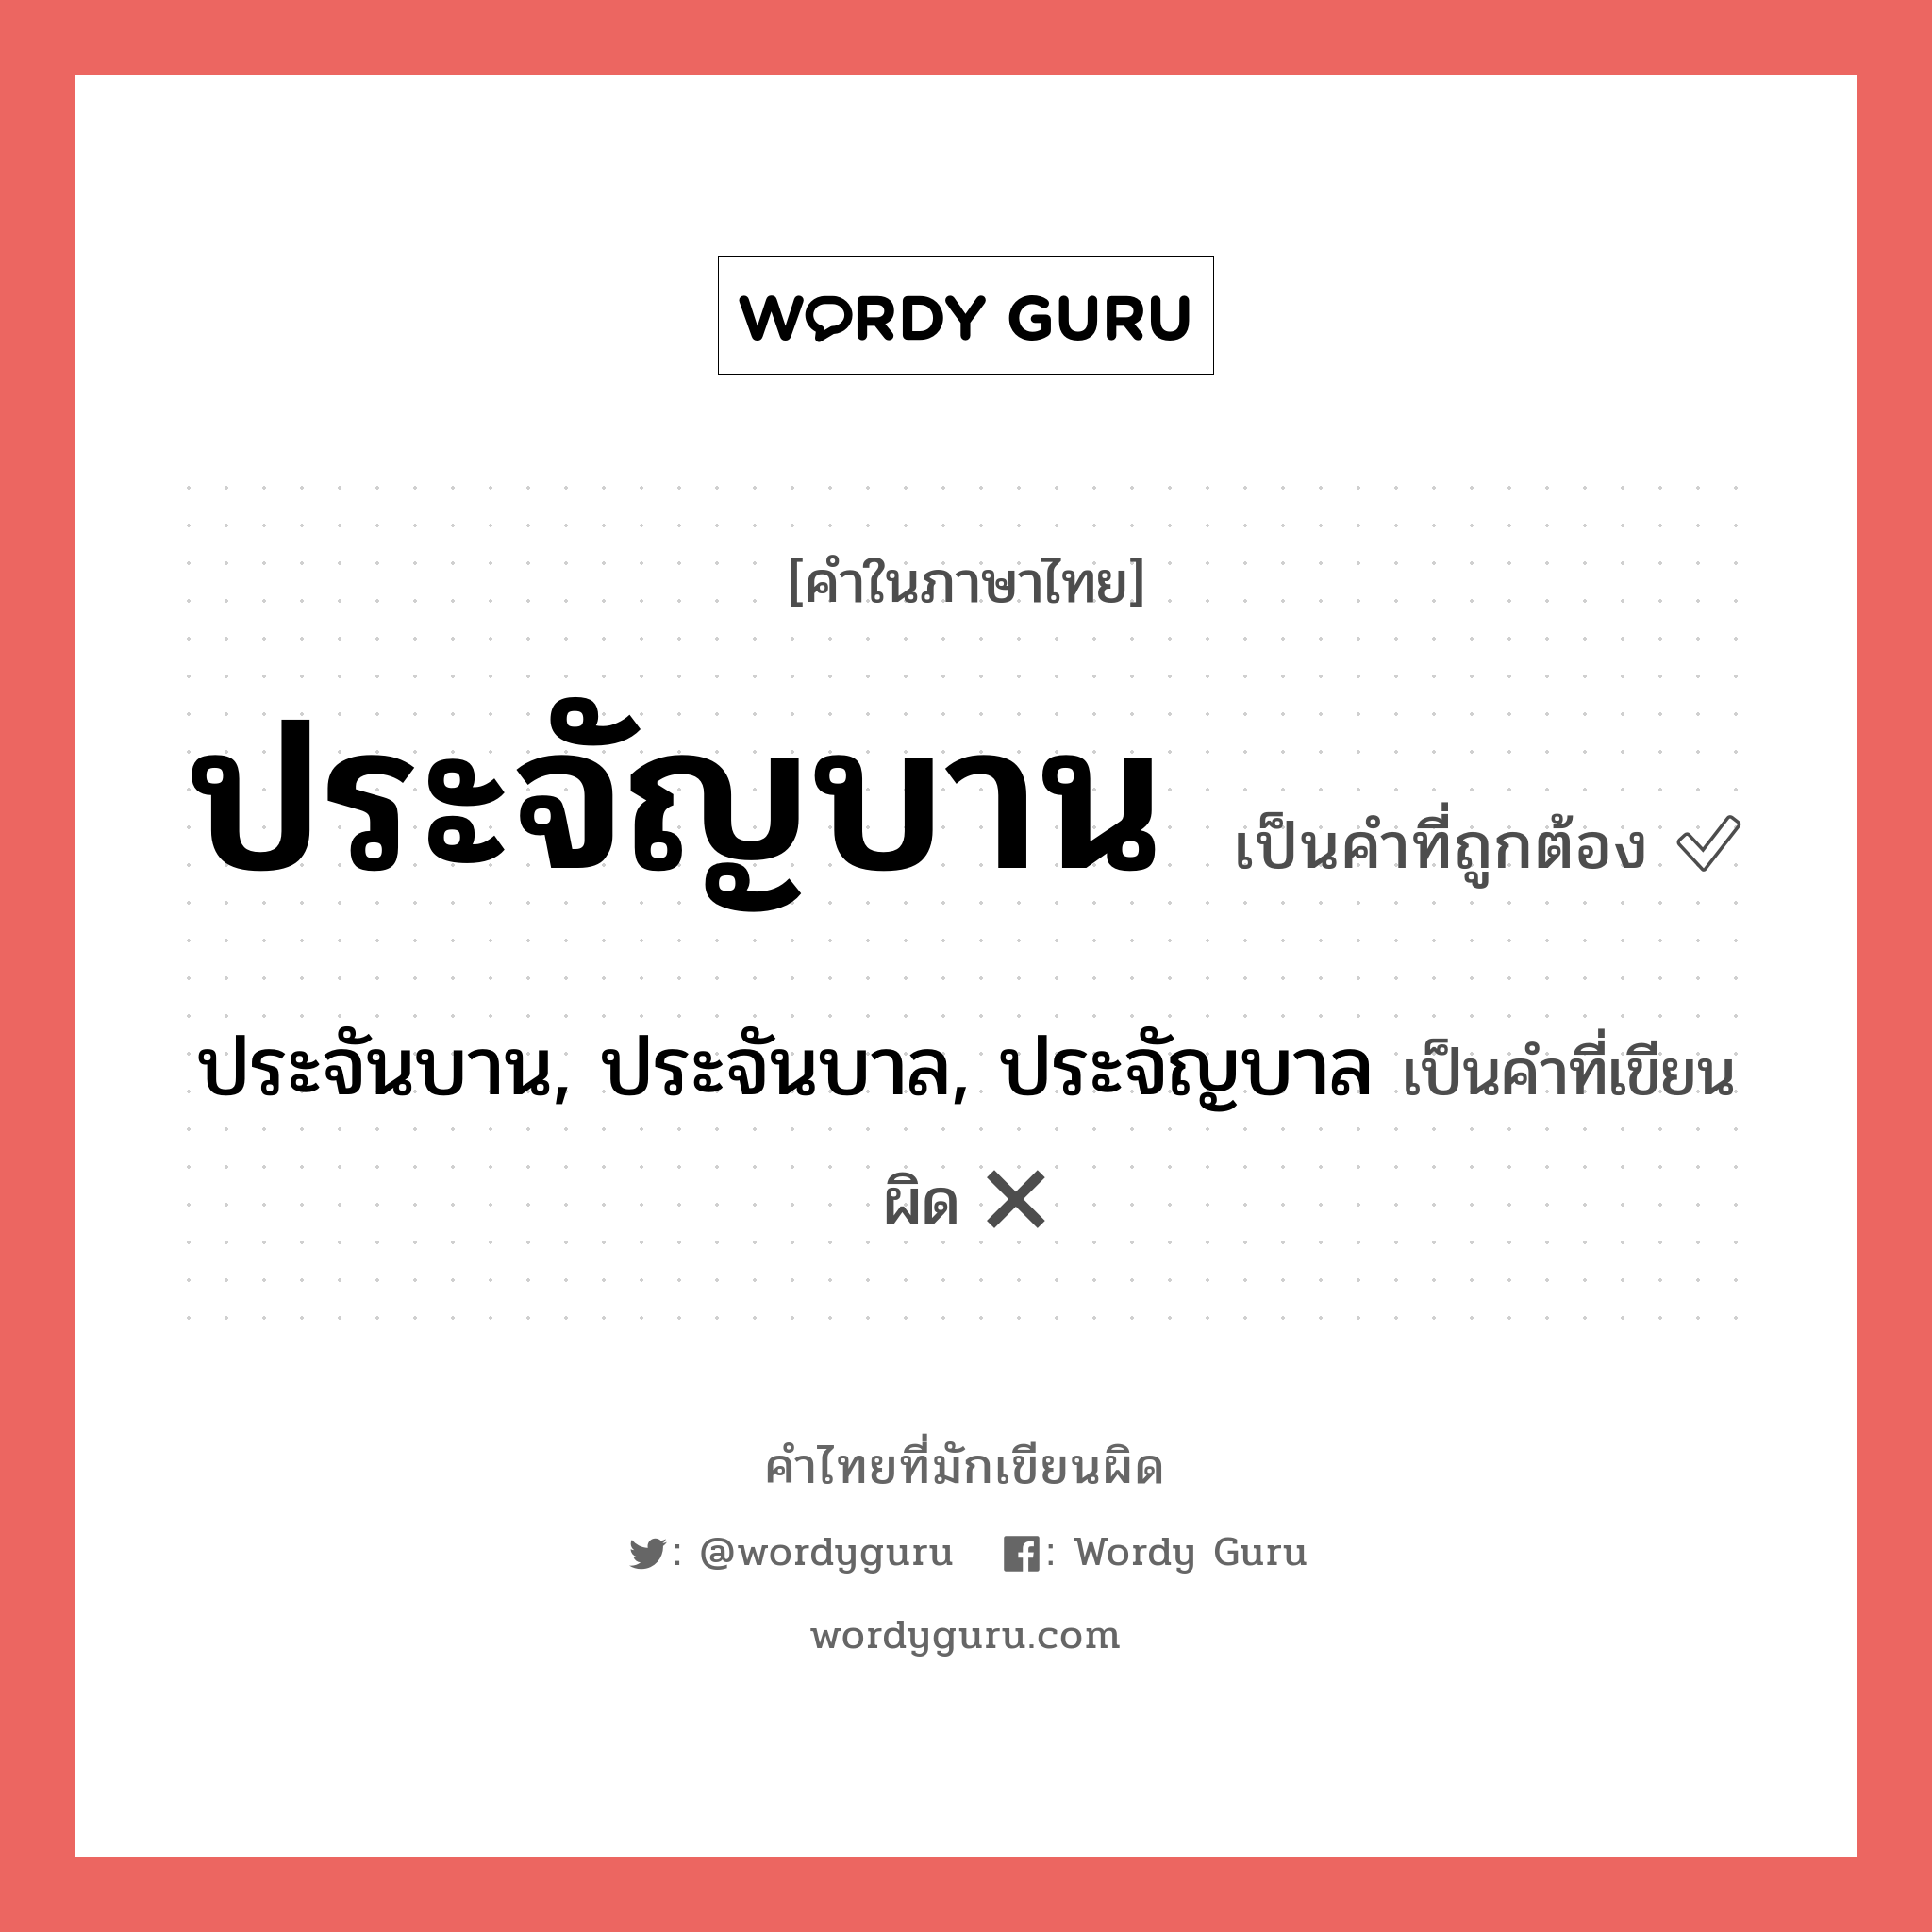 ประจัญบาน หรือ ประจันบาน, ประจันบาล, ประจัญบาล เขียนยังไง? คำไหนเขียนถูก?, คำในภาษาไทยที่มักเขียนผิด ประจัญบาน คำที่ผิด ❌ ประจันบาน, ประจันบาล, ประจัญบาล